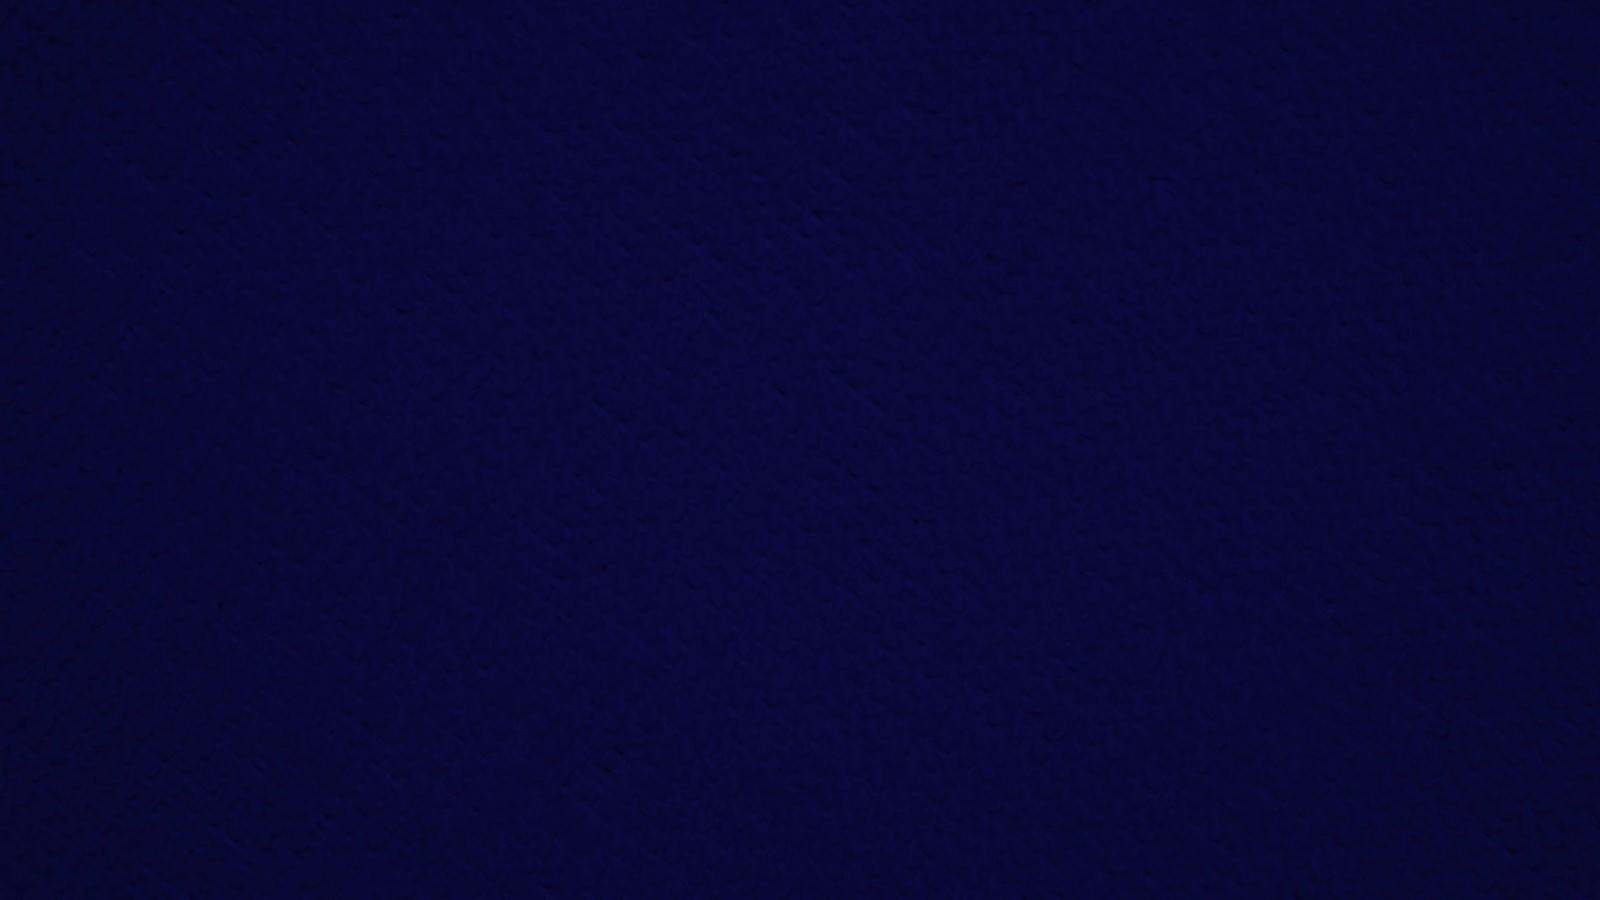 Minimalistic Dark Blue Plain Wallpaper. Wallpaper